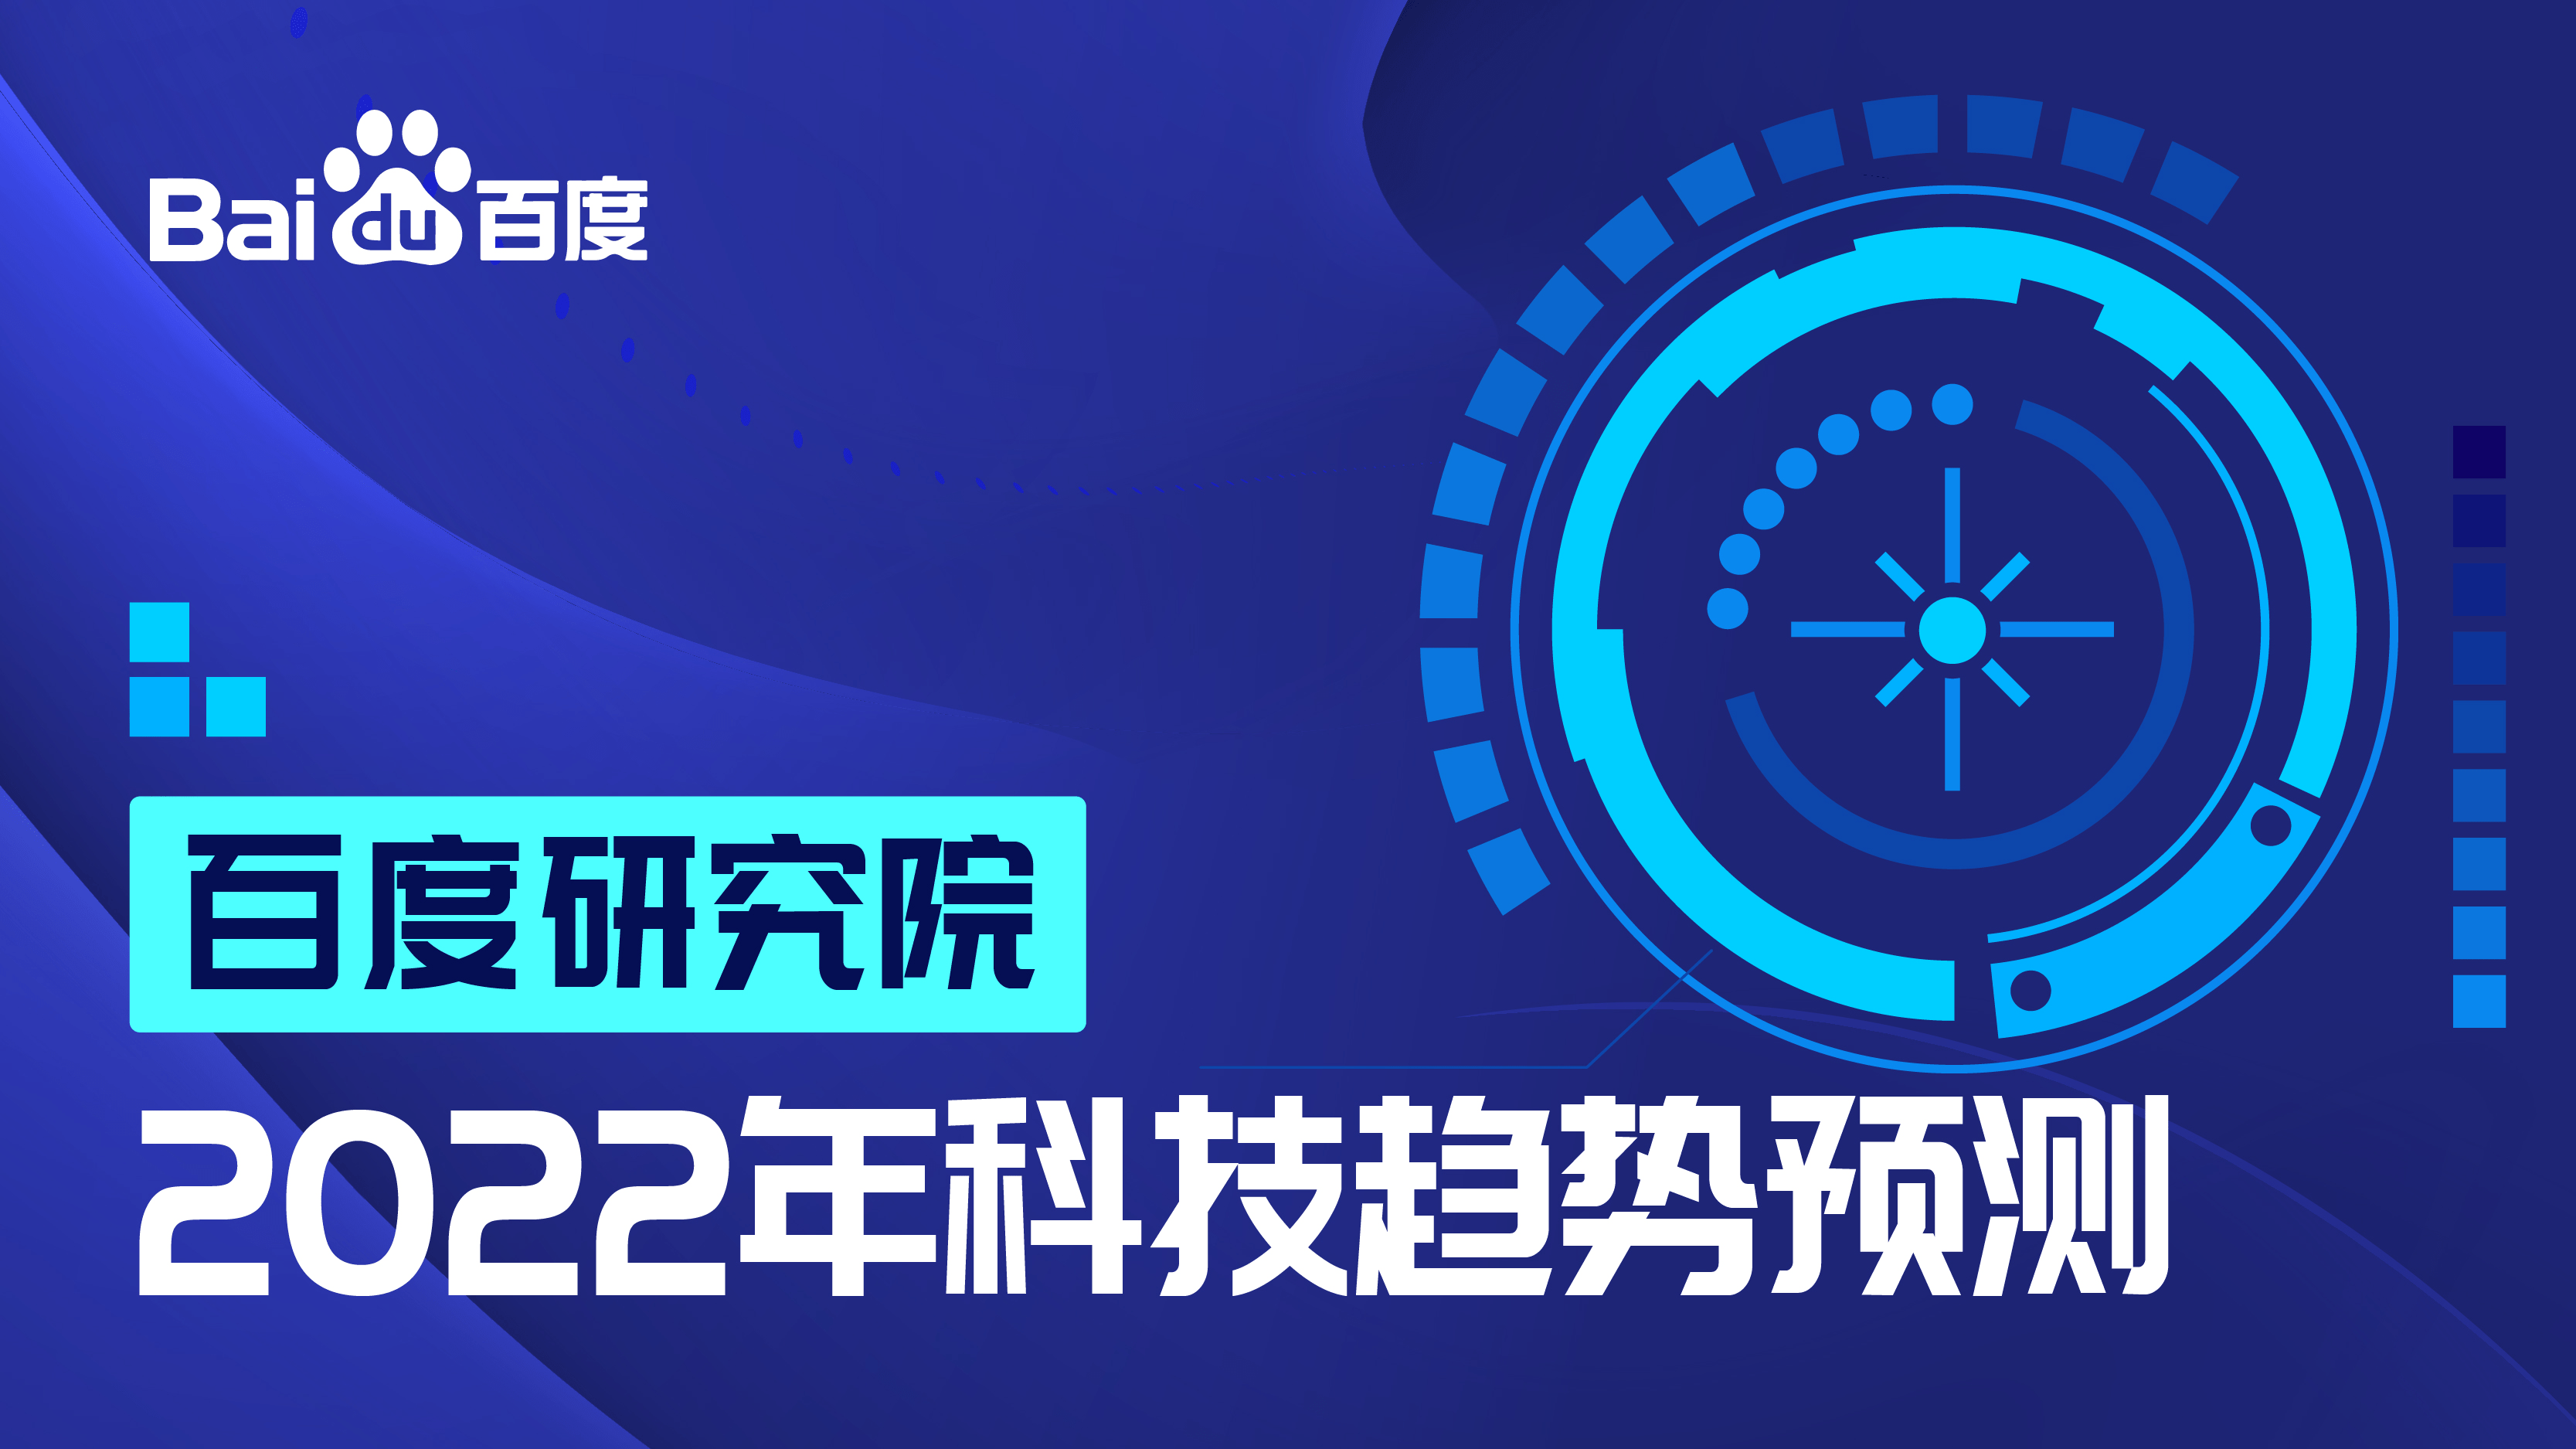 天津线路- 百度研究院发布2022年十大科技趋势：基于AI的生物计算高速发展将迎新突破